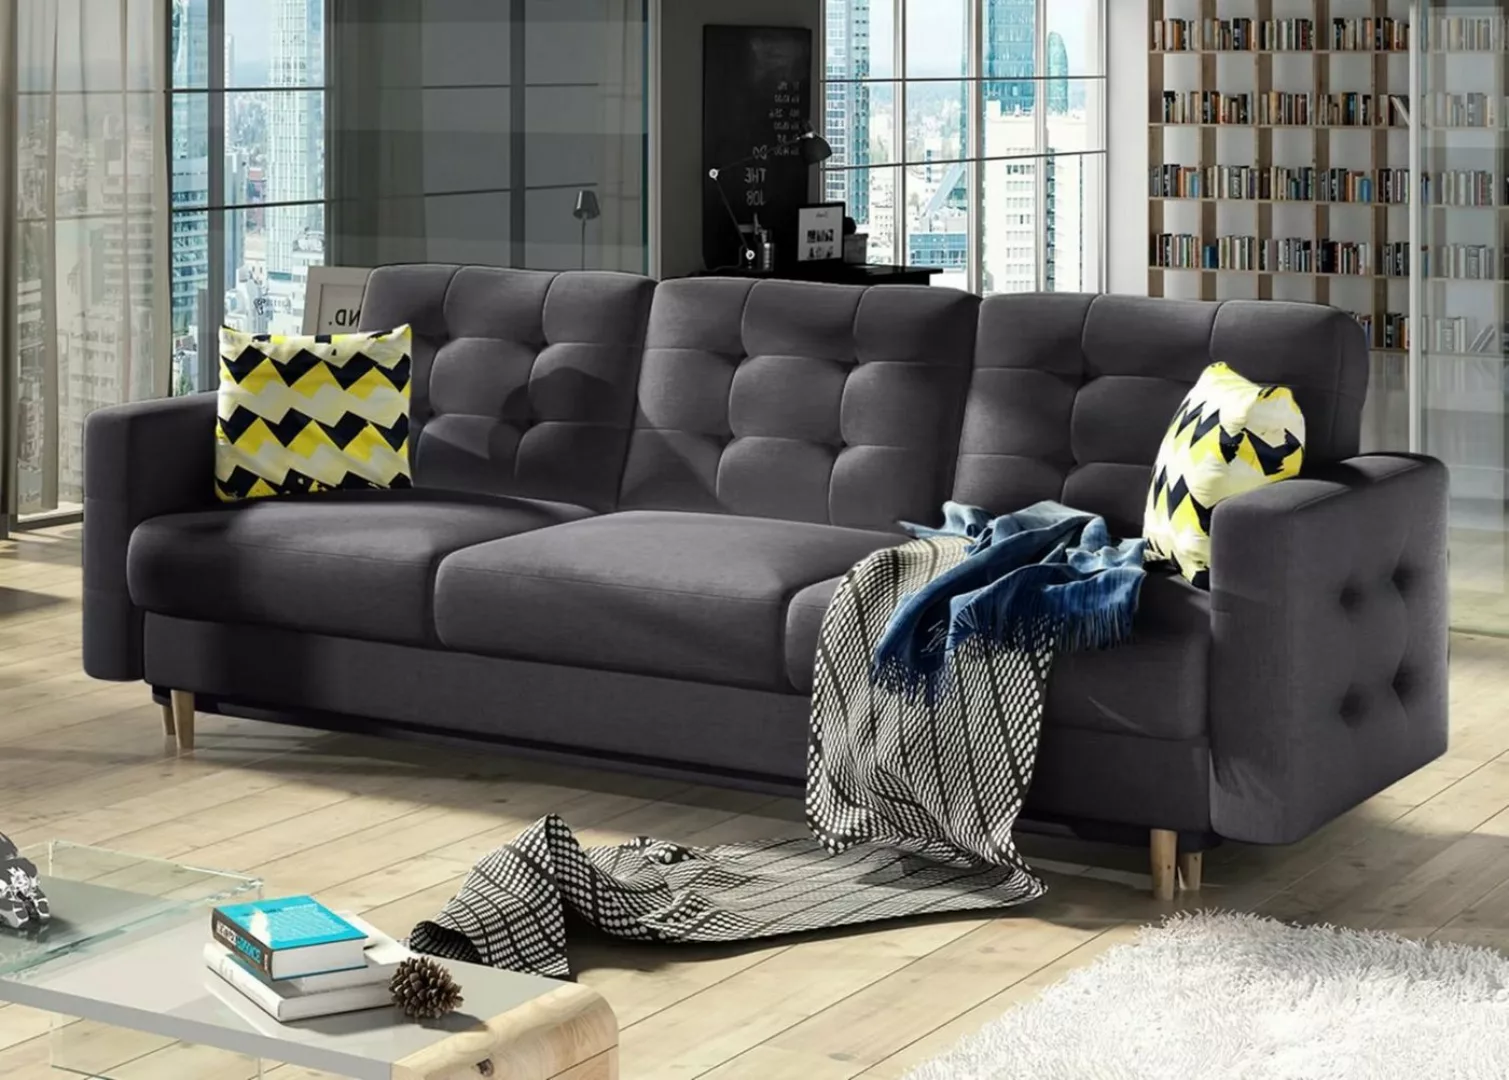 JVmoebel Sofa Sofa Dreisitzer Bettkasten Polster 3 Sitzer 100% Textil Couch günstig online kaufen